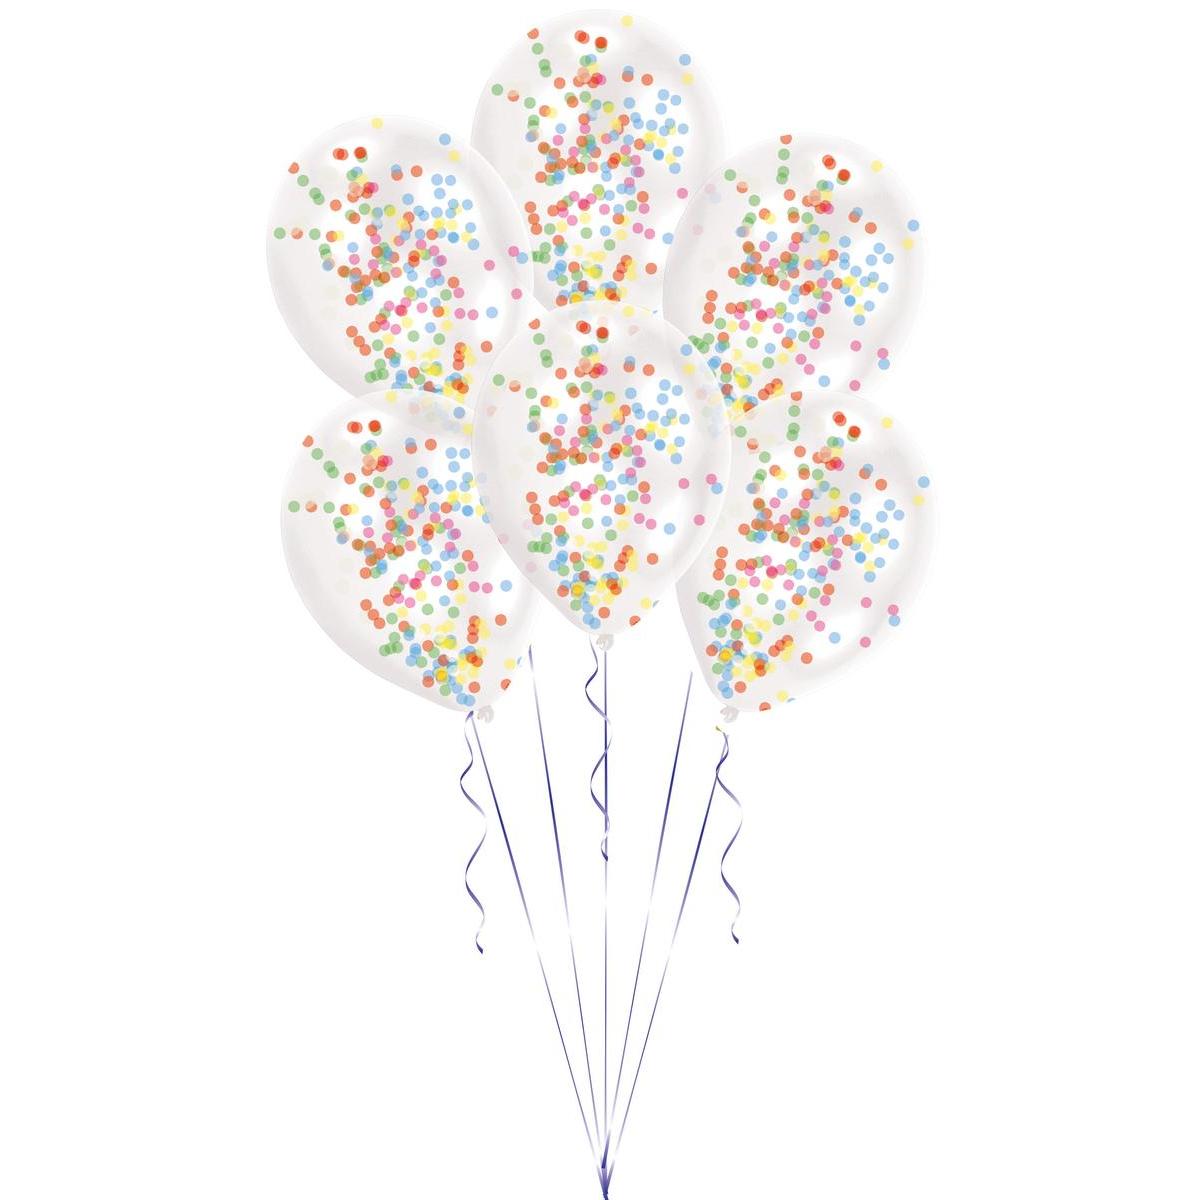 6 ballons à remplir de confettis - L 18.5 x l 10.5 cm - Or, transparent